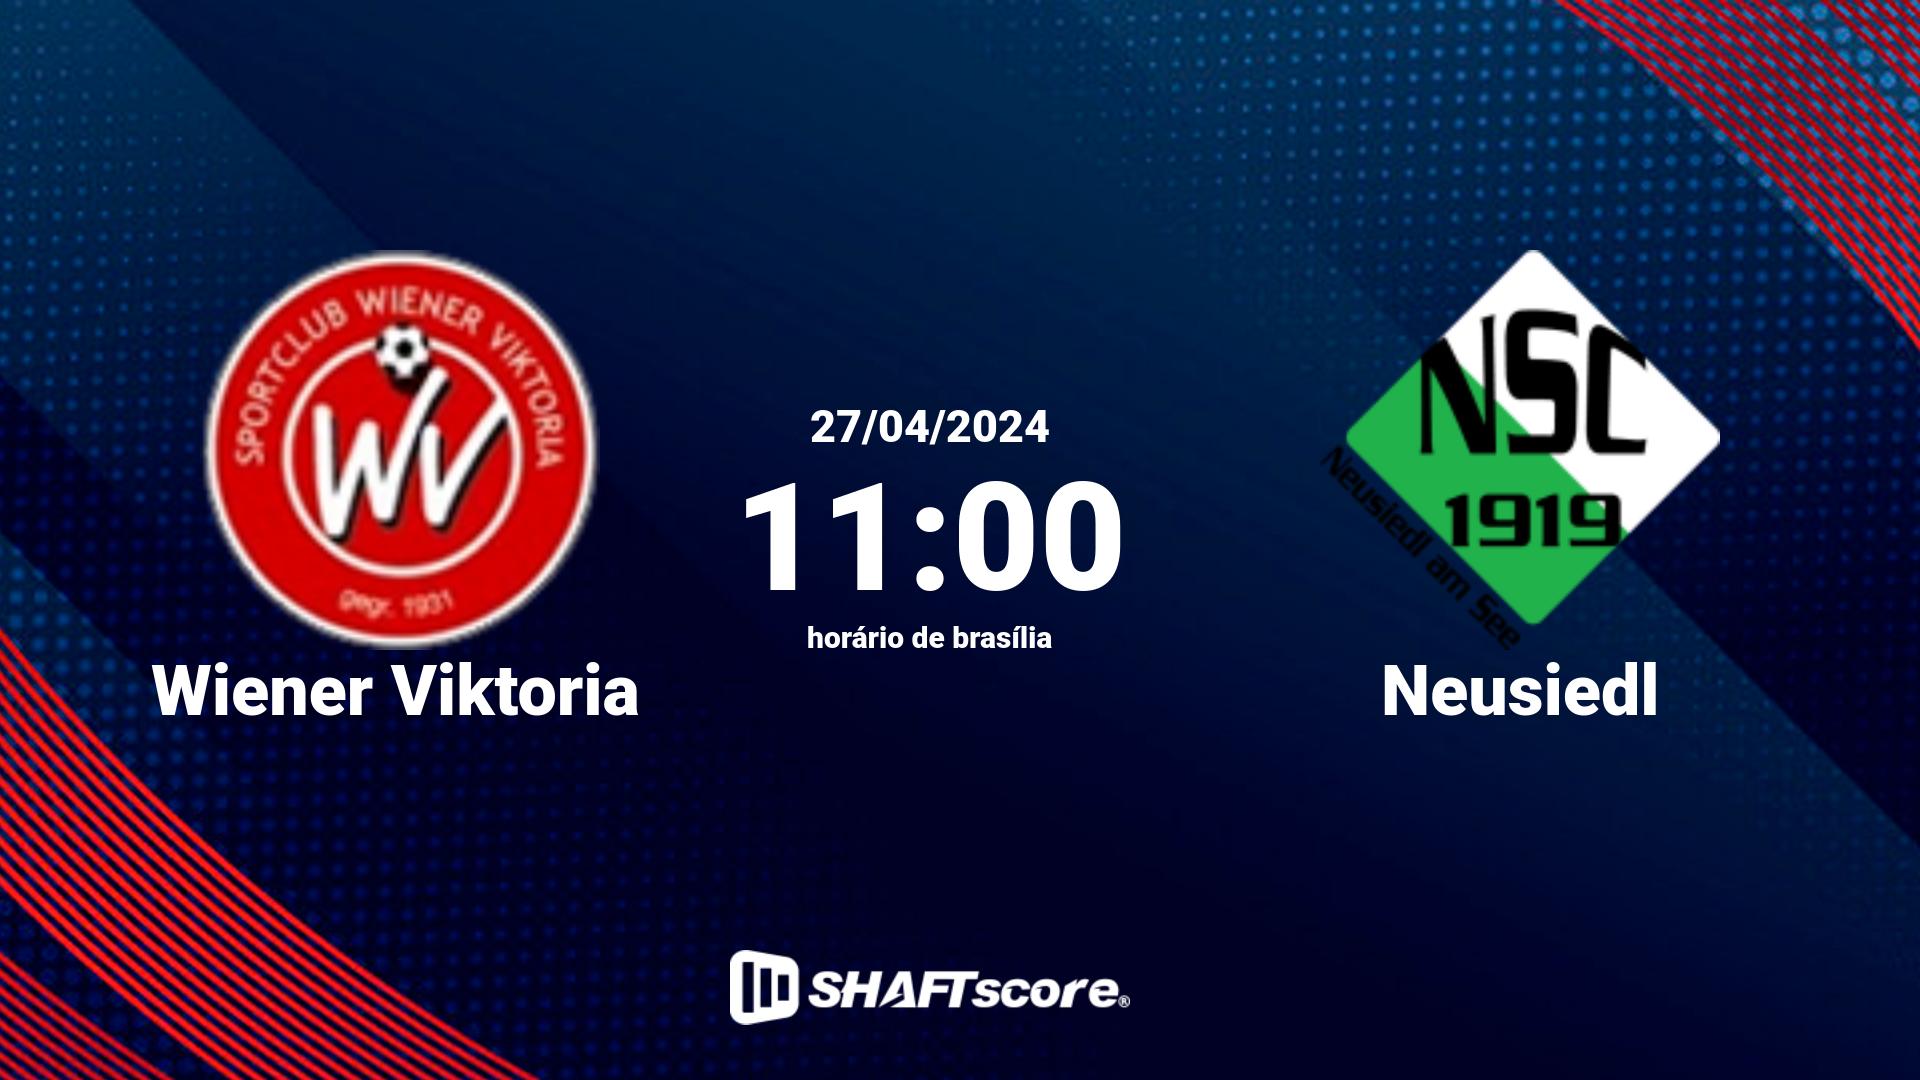 Estatísticas do jogo Wiener Viktoria vs Neusiedl 27.04 11:00